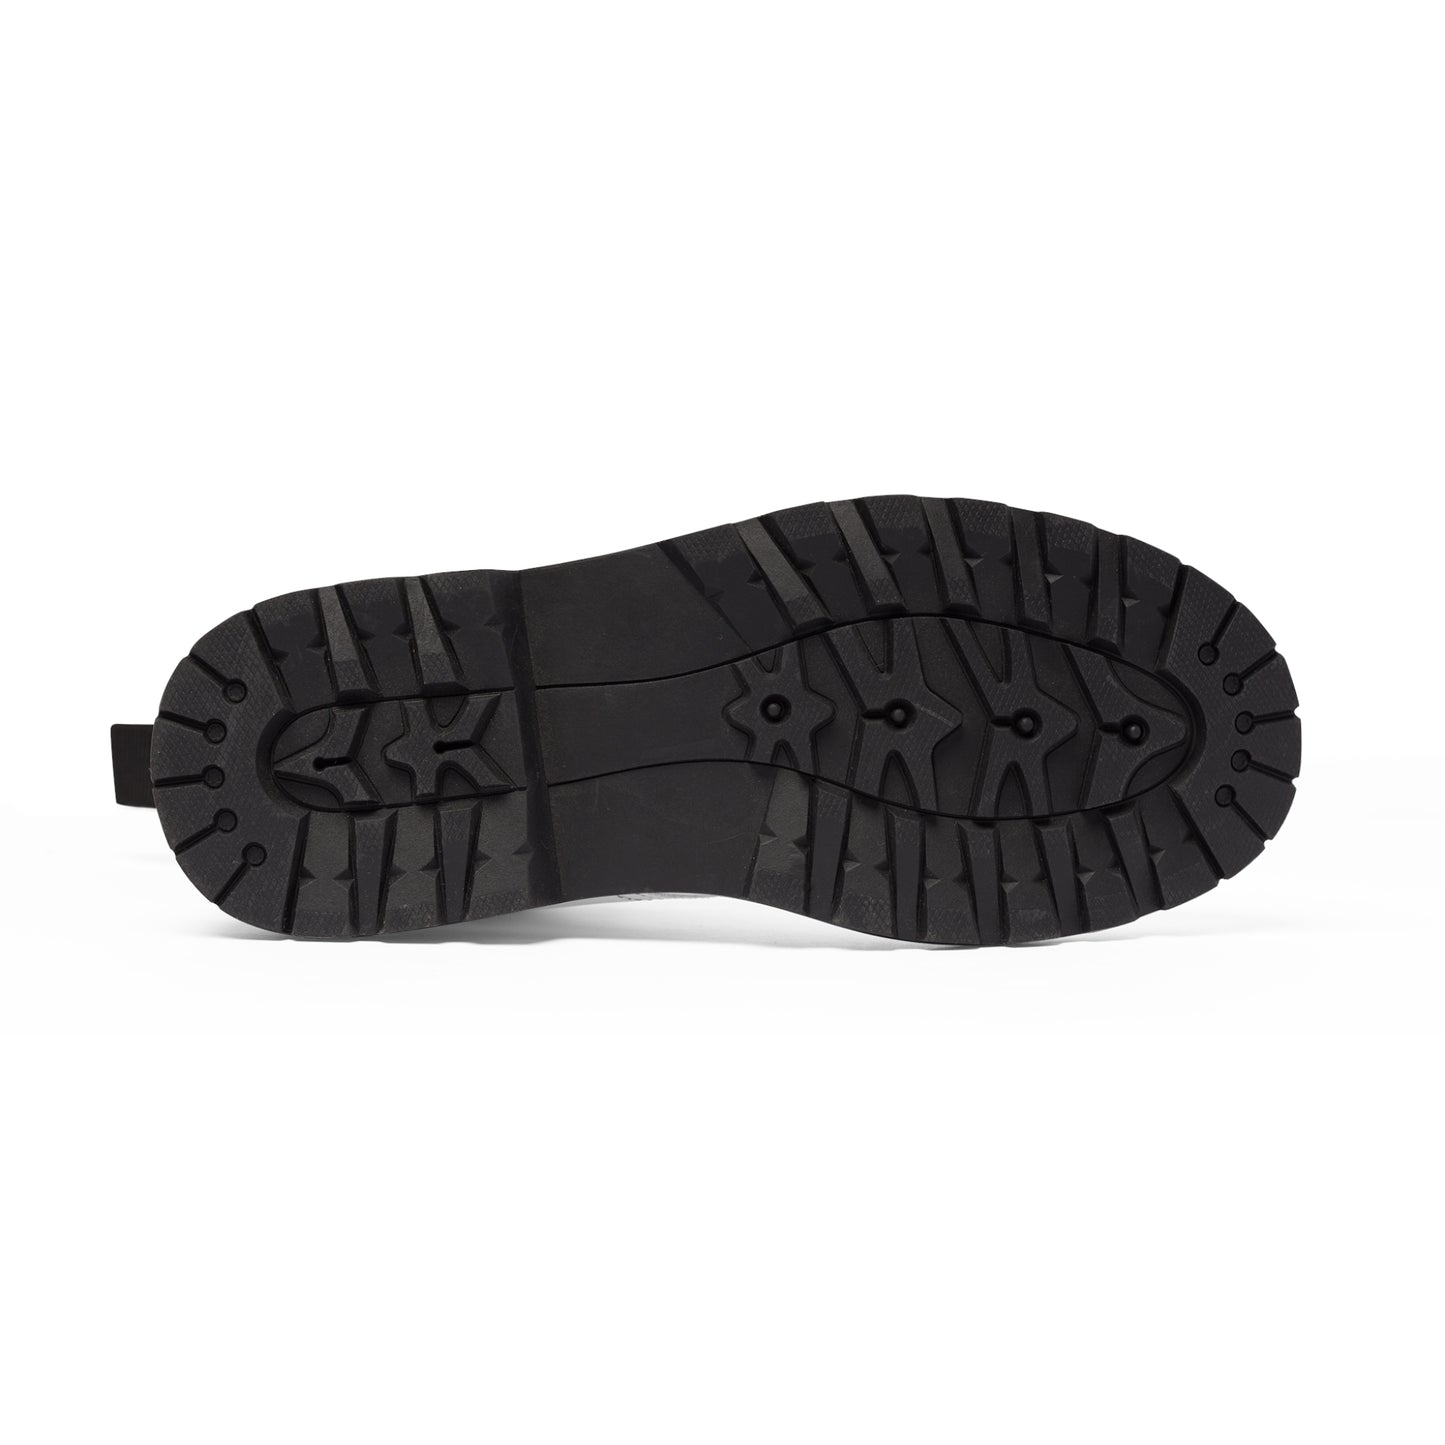 Men's Canvas Boots - Storm Gray US 10.5 Black sole